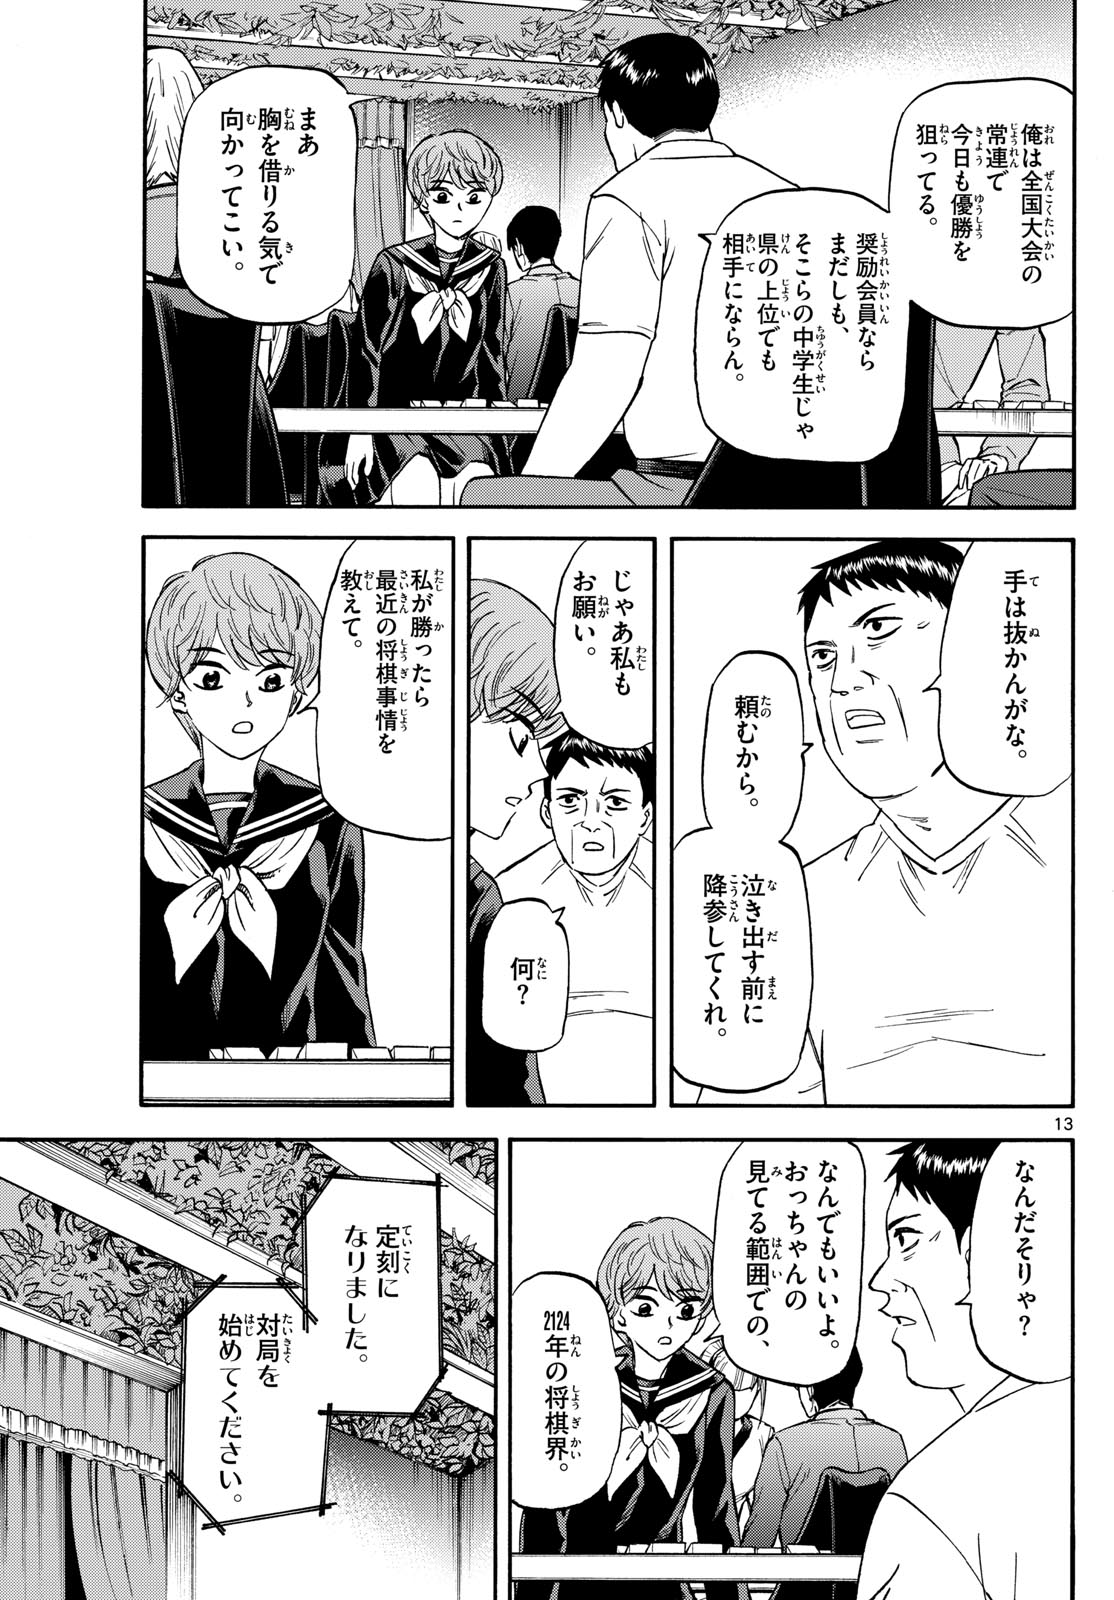 Tatsu to Ichigo - Chapter 185 - Page 13